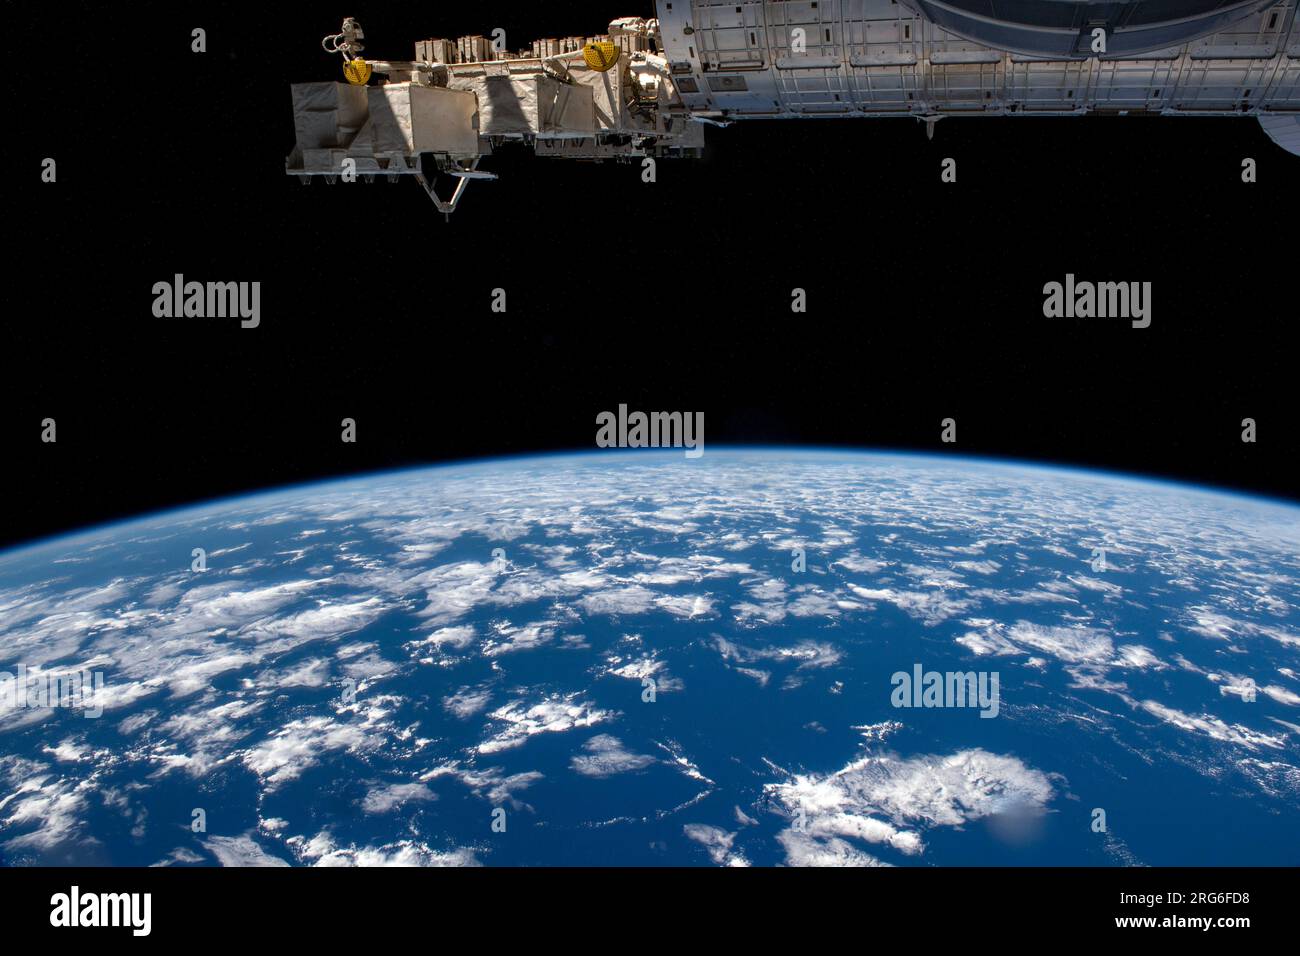 L'arto terrestre, o orizzonte, è raffigurato dalla stazione spaziale Internazionale mentre orbita sopra l'Oceano Pacifico al largo di Chili. Foto Stock